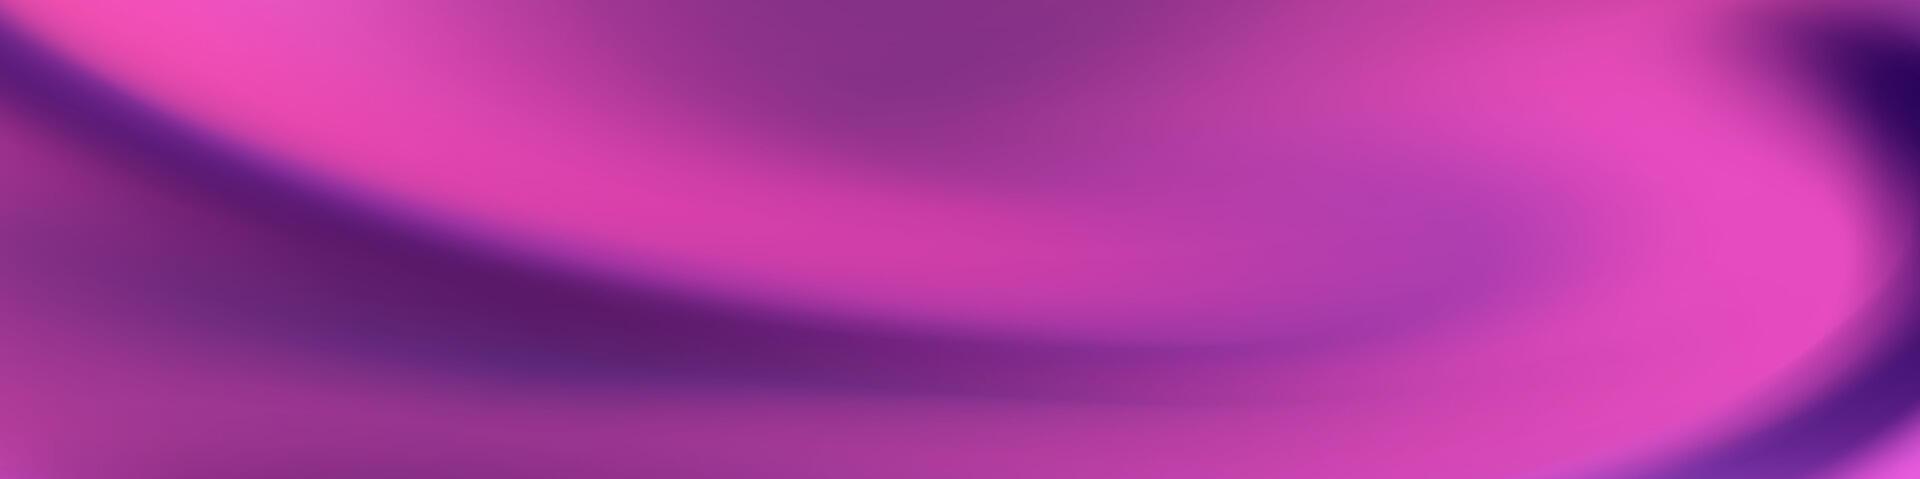 captiver votre public avec le fascinant abstrait engrener brouiller bannière, où étourdissant violet vagues créer une sophistiqué et visuellement frappant afficher vecteur